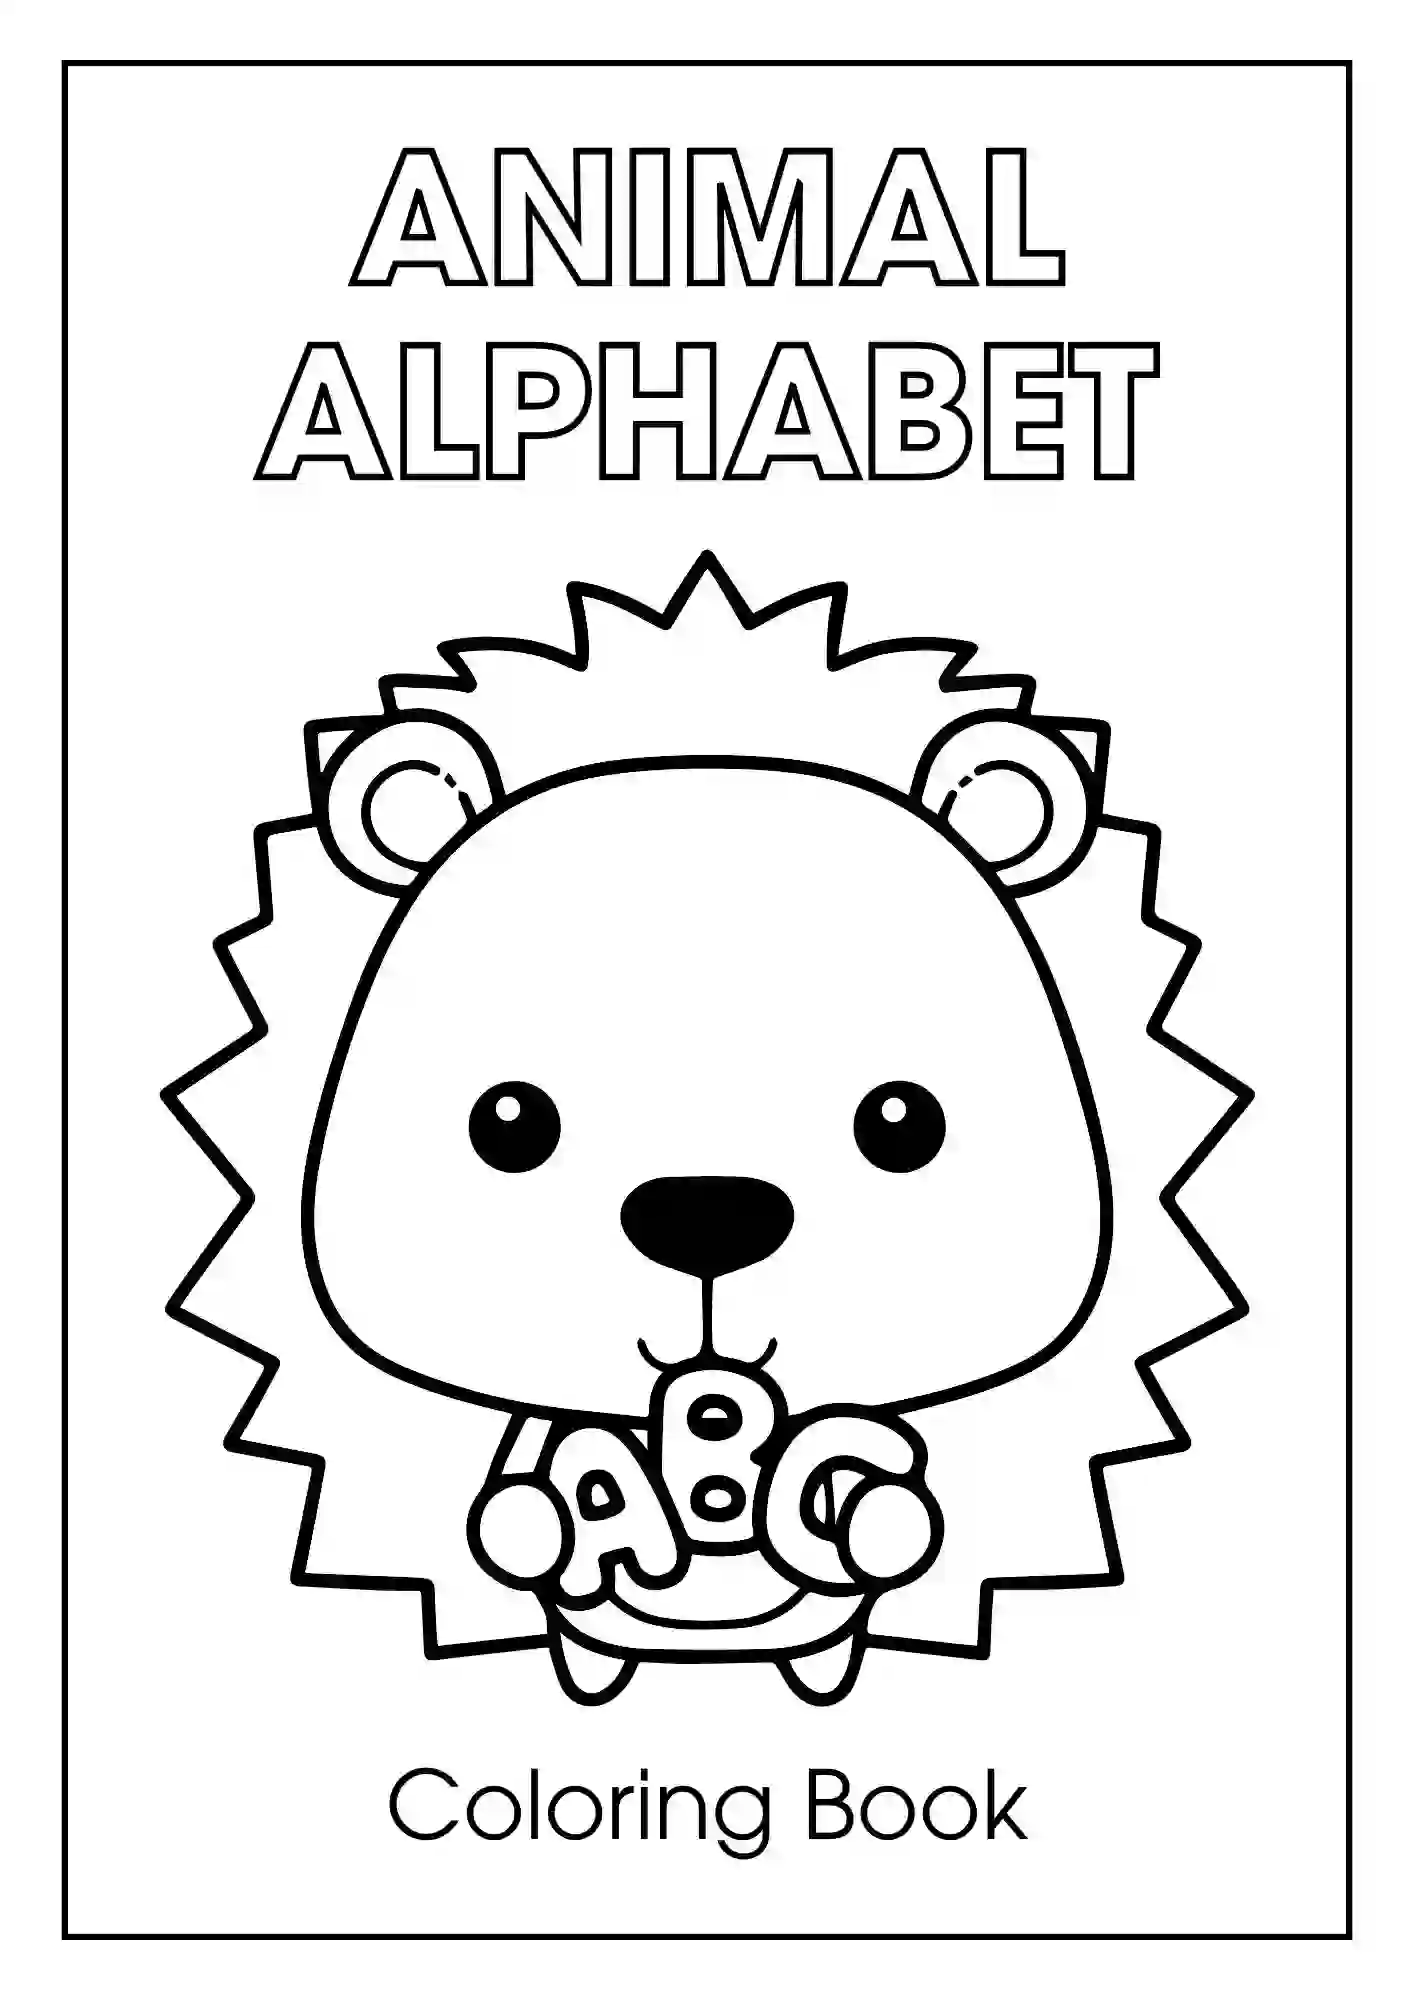 Animal Alphabet Coloring Worksheets For Kindergarten 